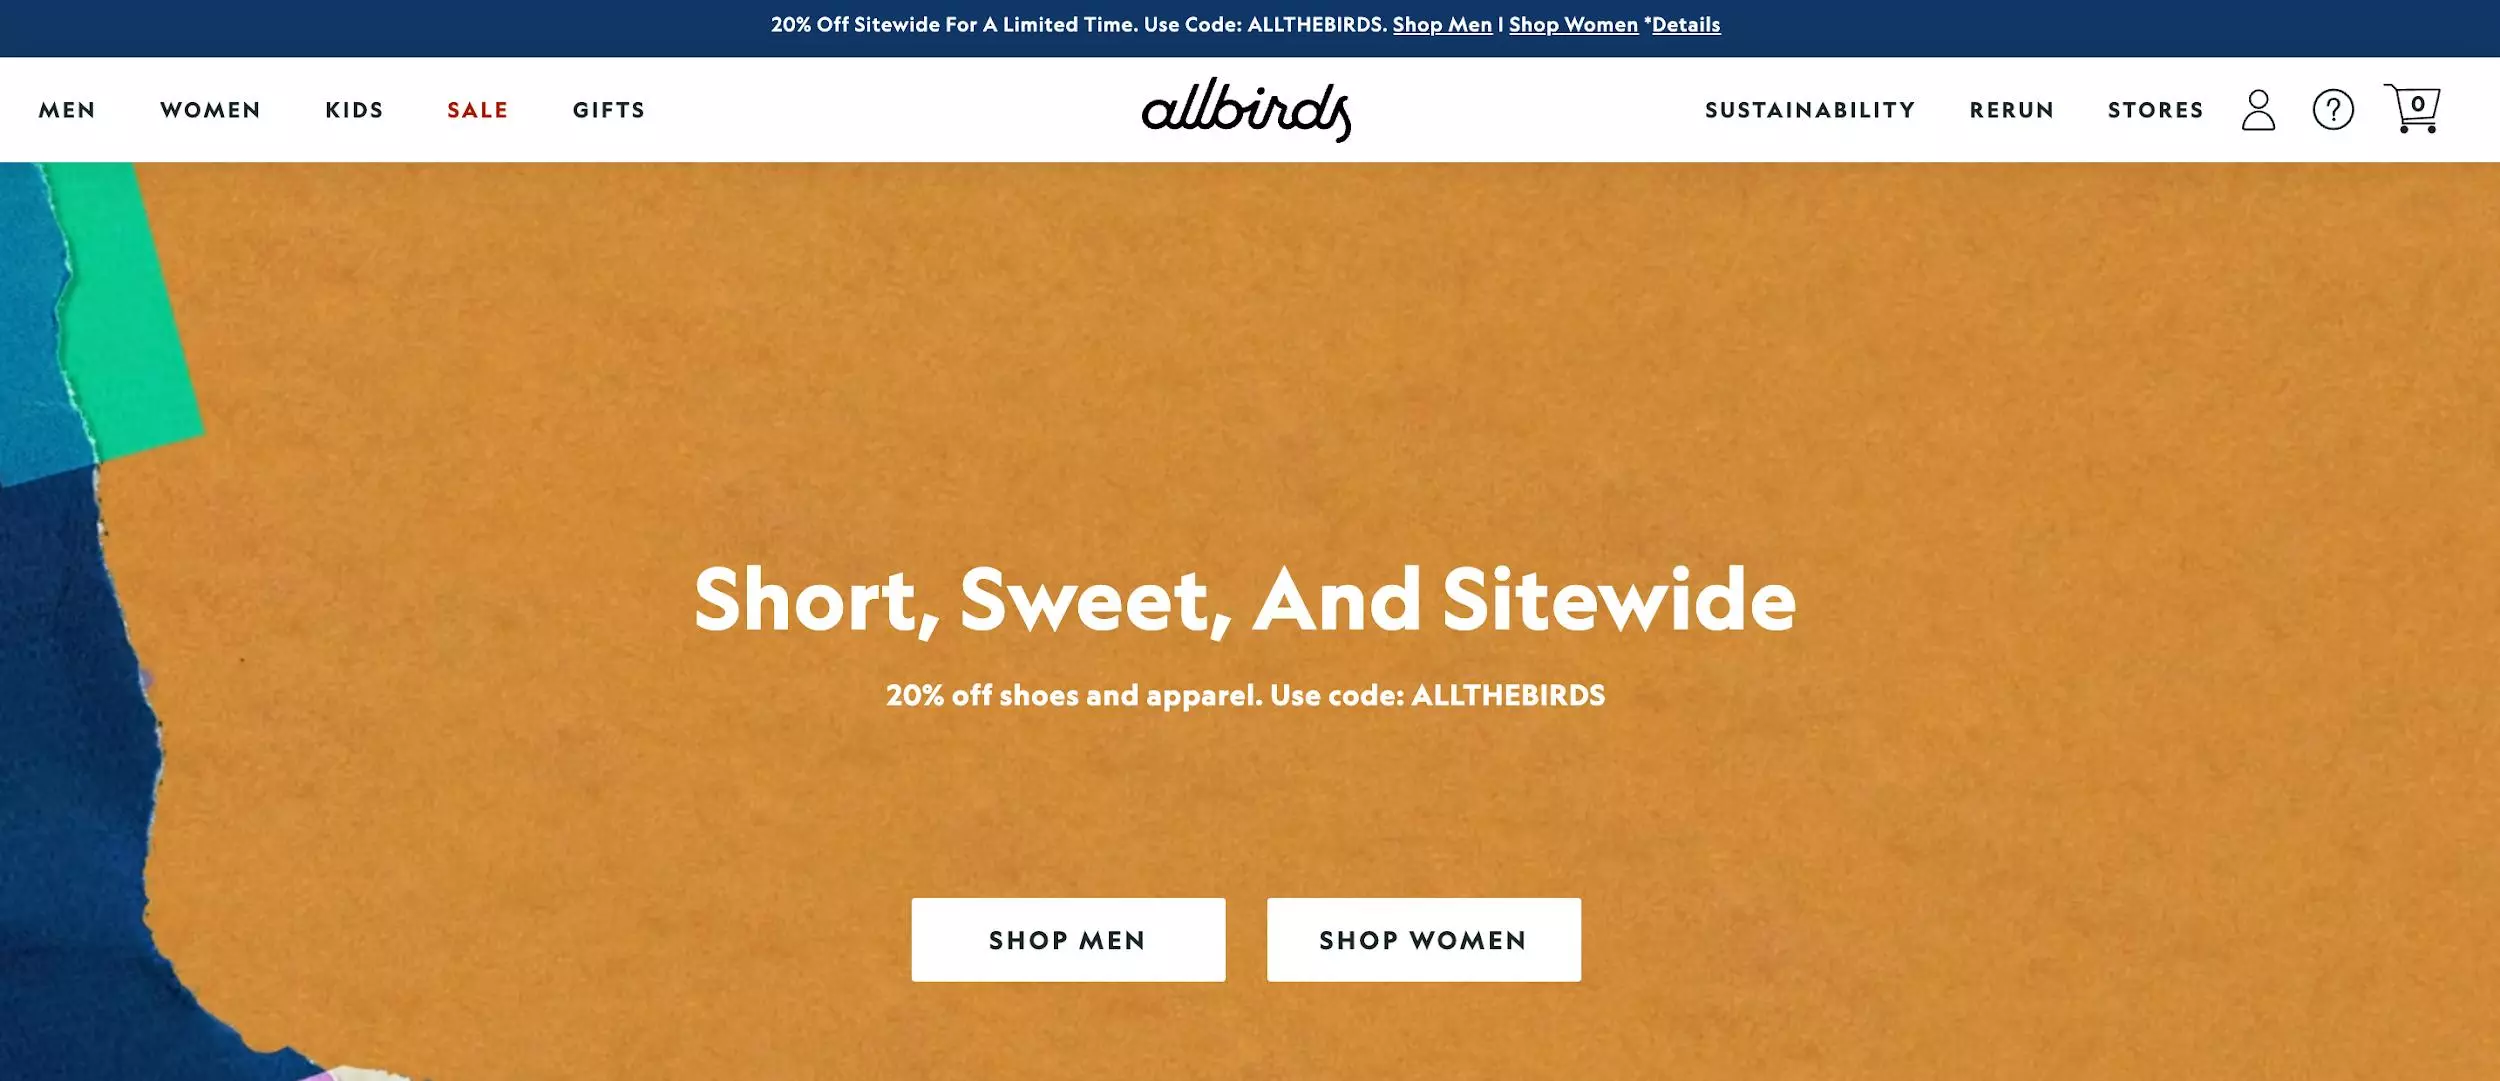 Allbirds.com